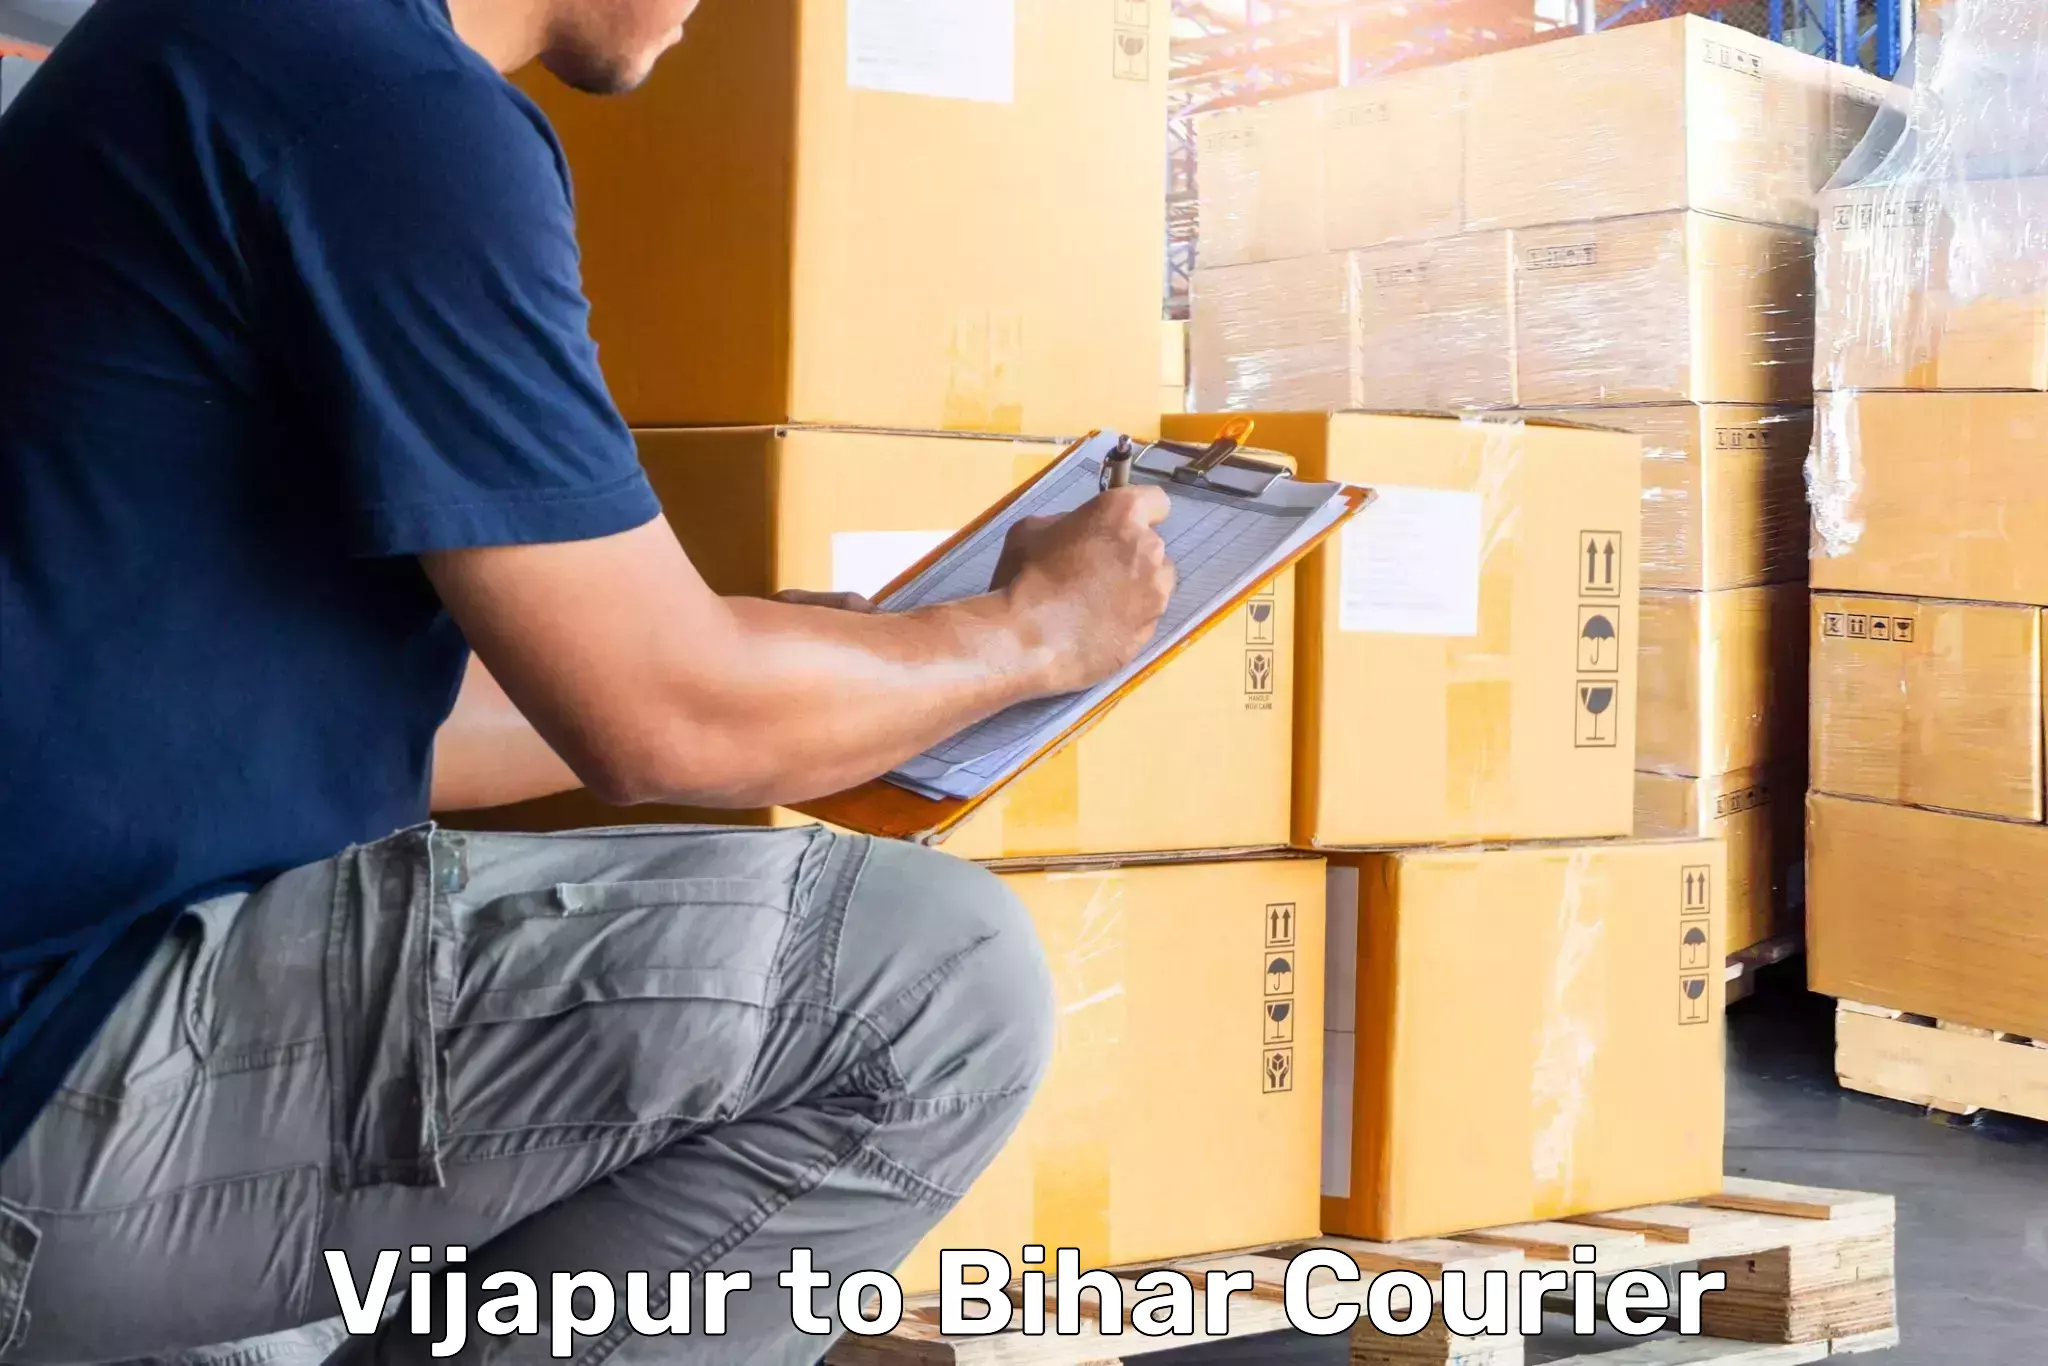 Luggage delivery app Vijapur to Narkatiaganj